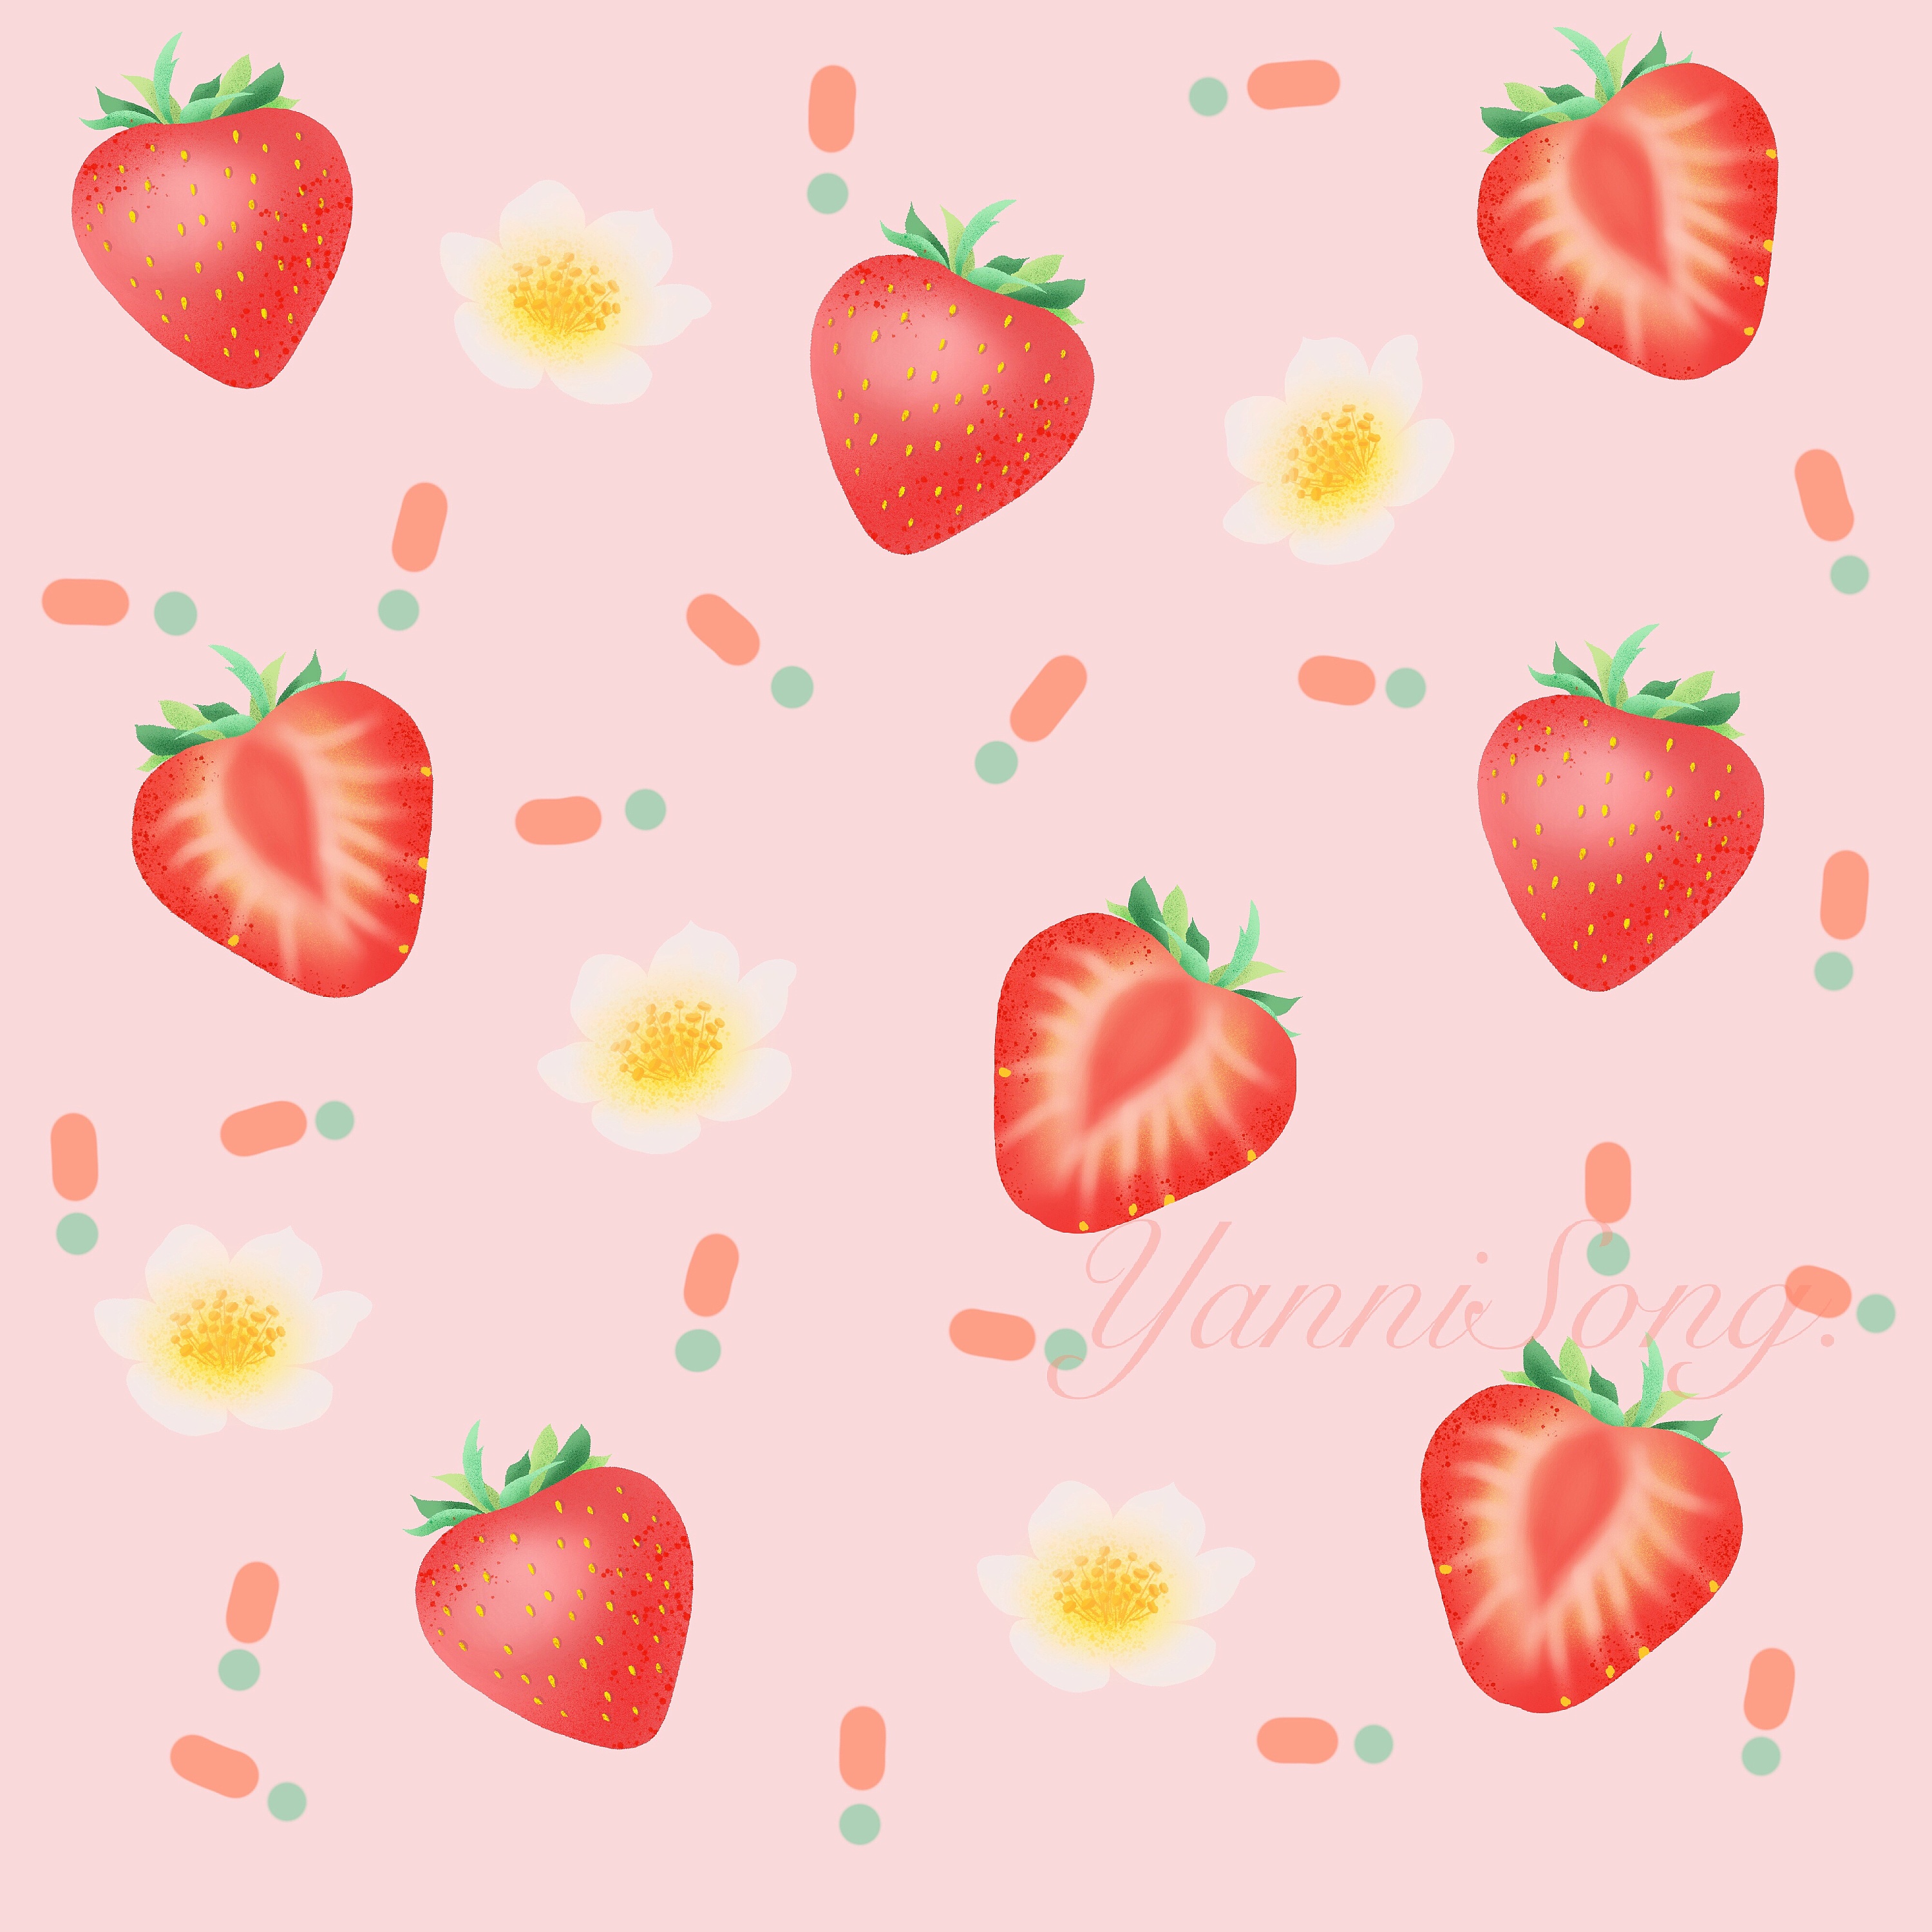 清新酸甜小草莓高清原图下载,清新酸甜小草莓,图片 - IOS桌面